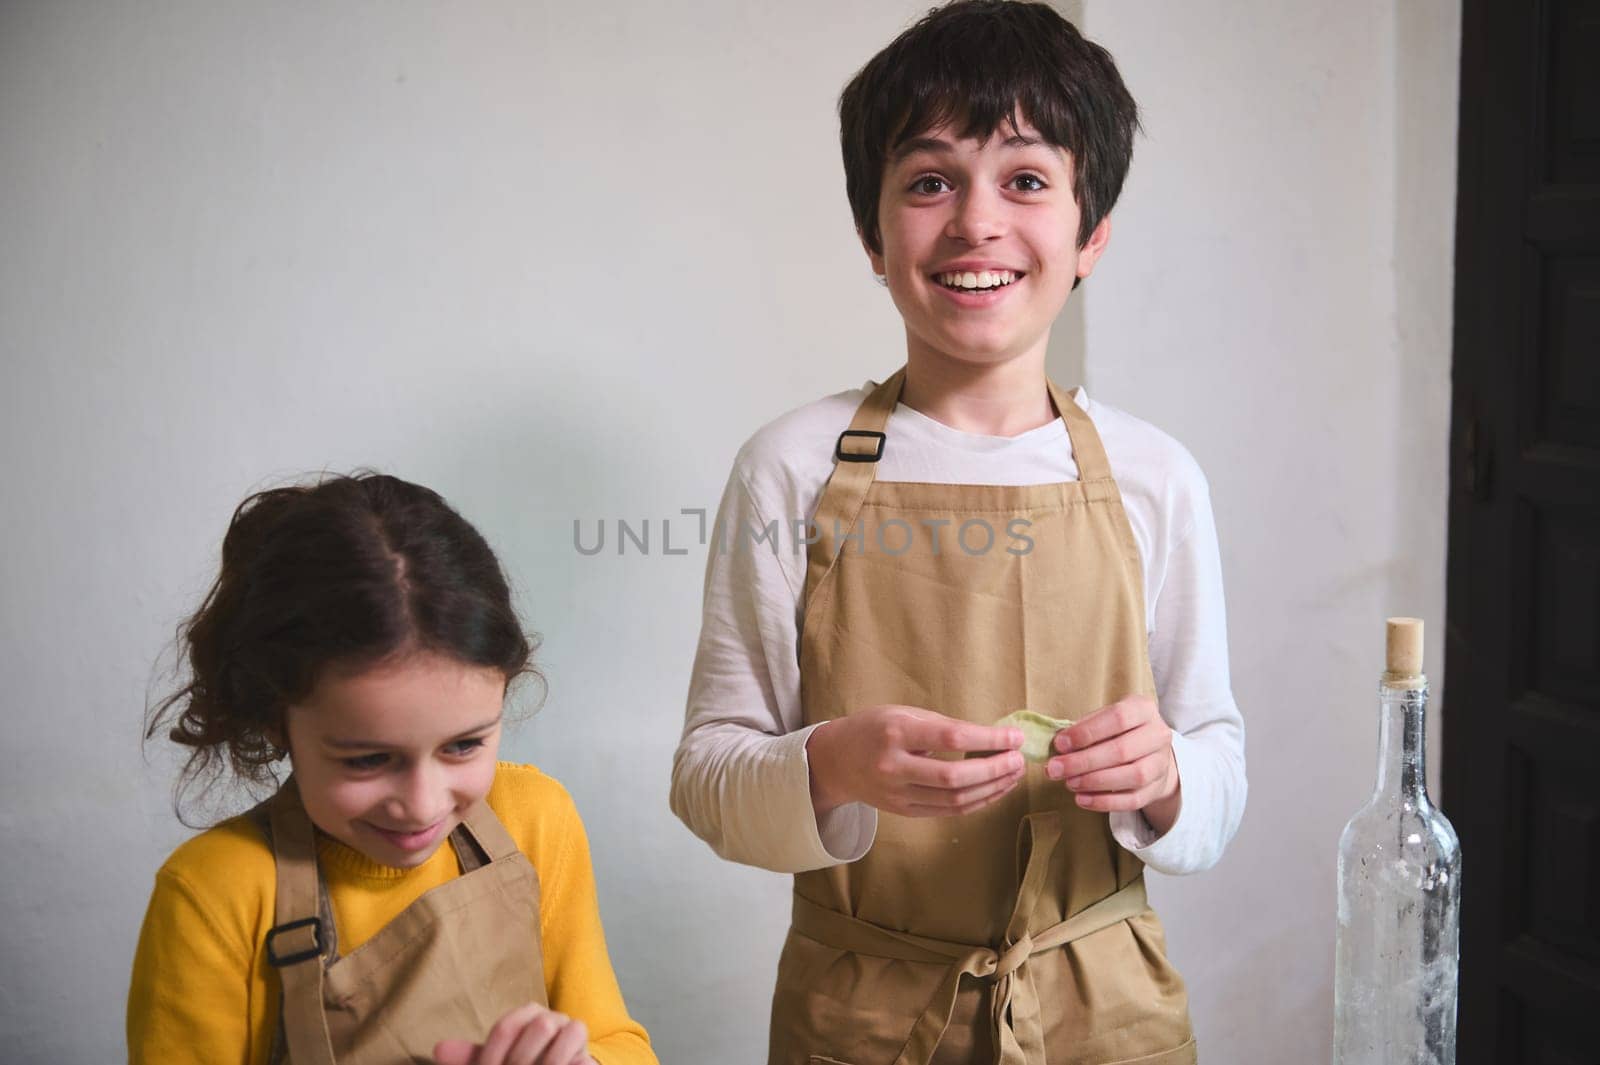 Authentic portrait of adorable children making dumplings at home kitchen